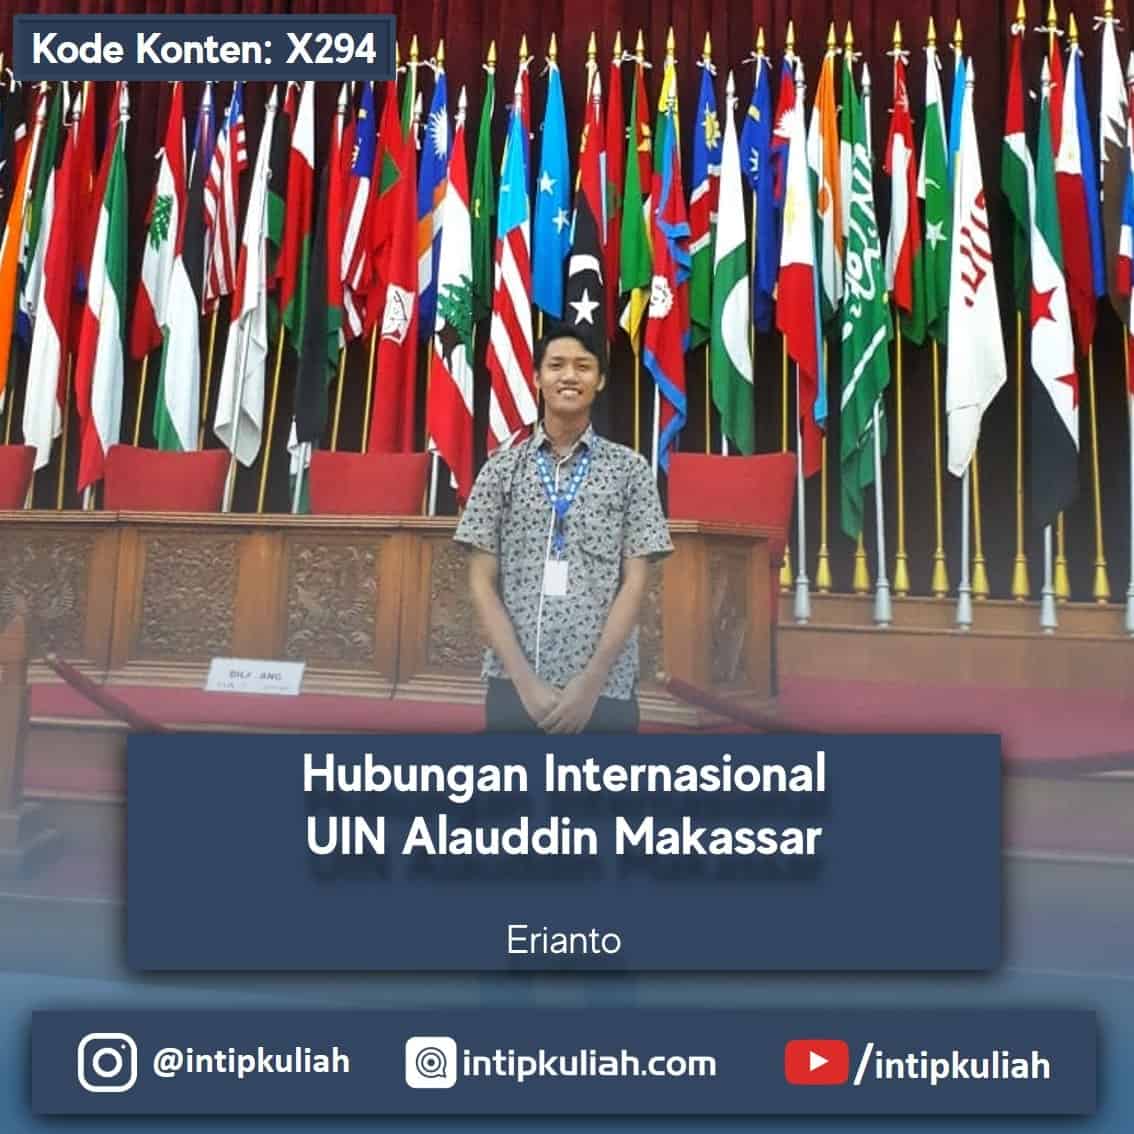 Hubungan Internasional UIN Alauddin Makassar (Erianto)